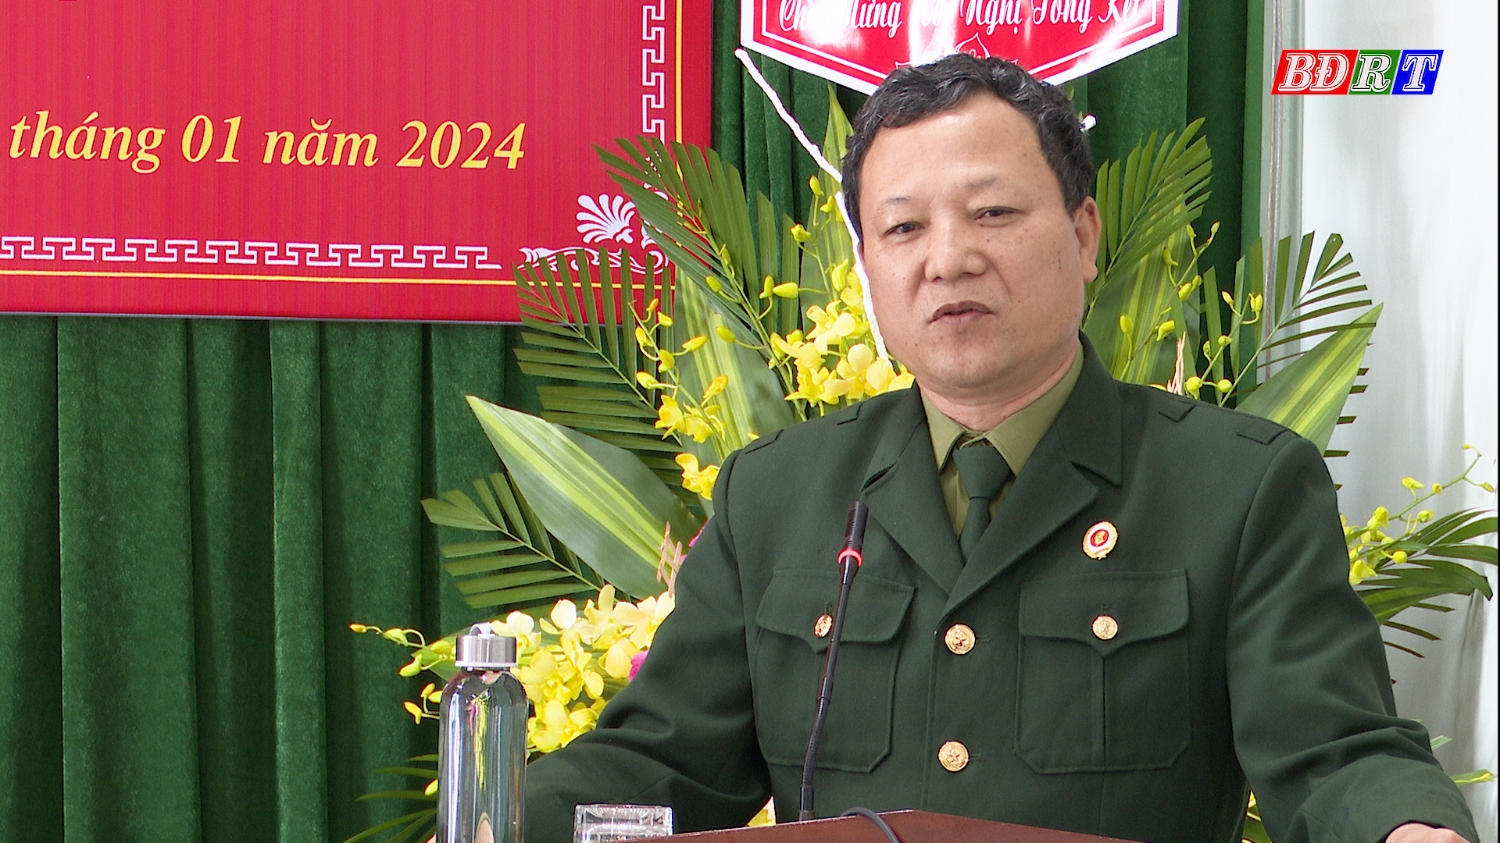 Đồng chí Hoàng Xuân Vĩnh, Phó Chủ tịch Thường trực Hội CCB tỉnh Quảng Bình phát biểu tại Hội nghị